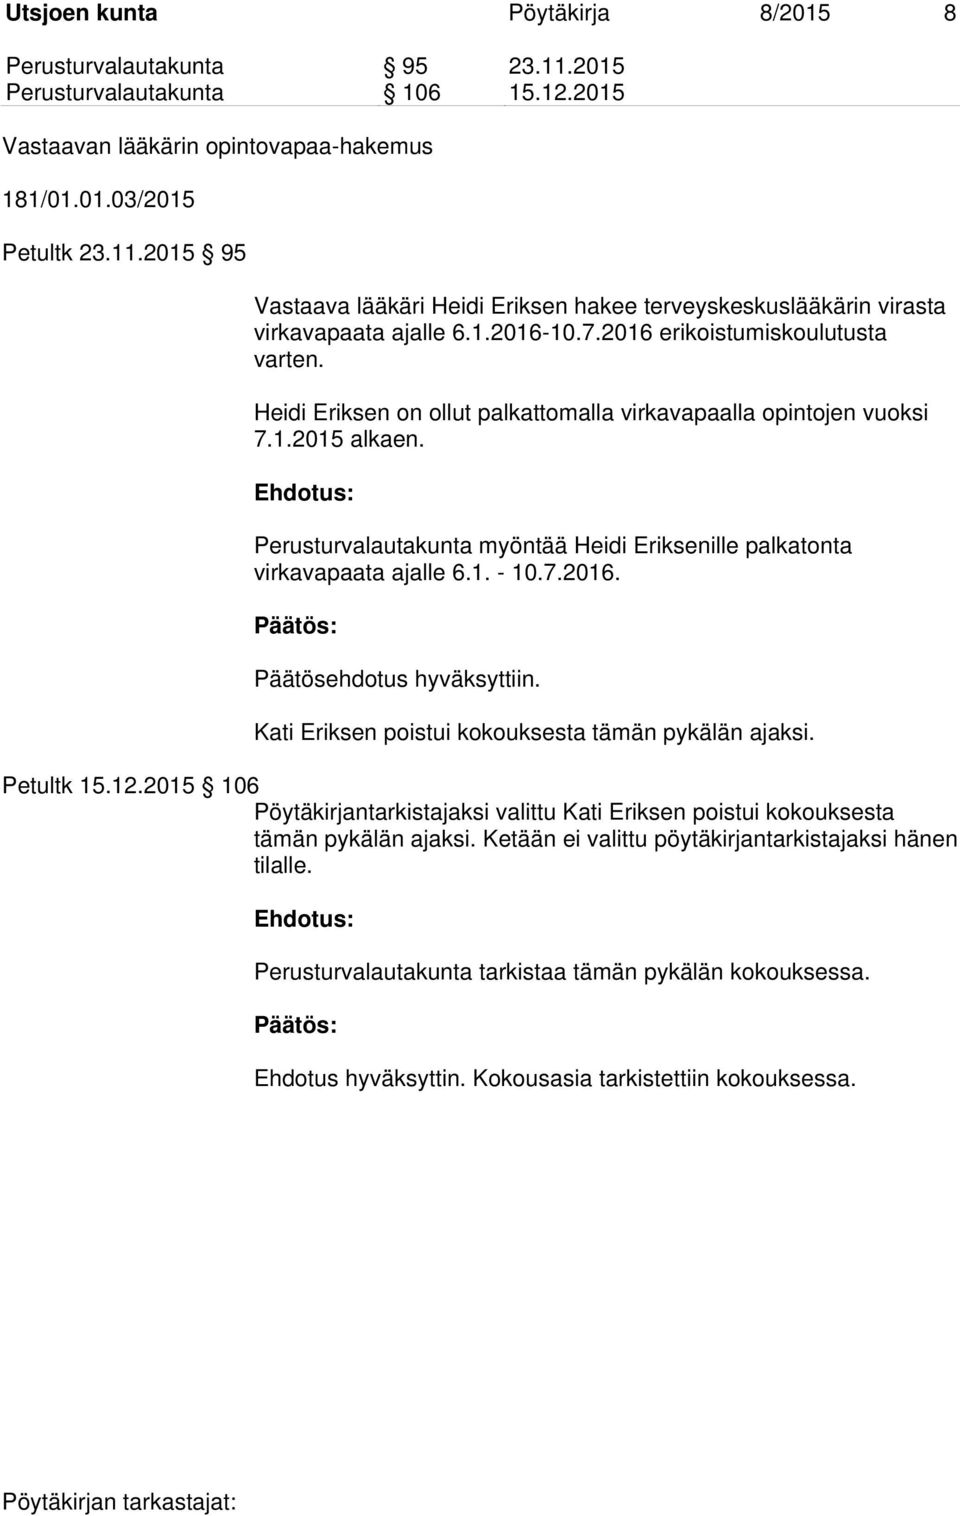 Perusturvalautakunta myöntää Heidi Eriksenille palkatonta virkavapaata ajalle 6.1. - 10.7.2016. Päätösehdotus hyväksyttiin. Kati Eriksen poistui kokouksesta tämän pykälän ajaksi. Petultk 15.12.